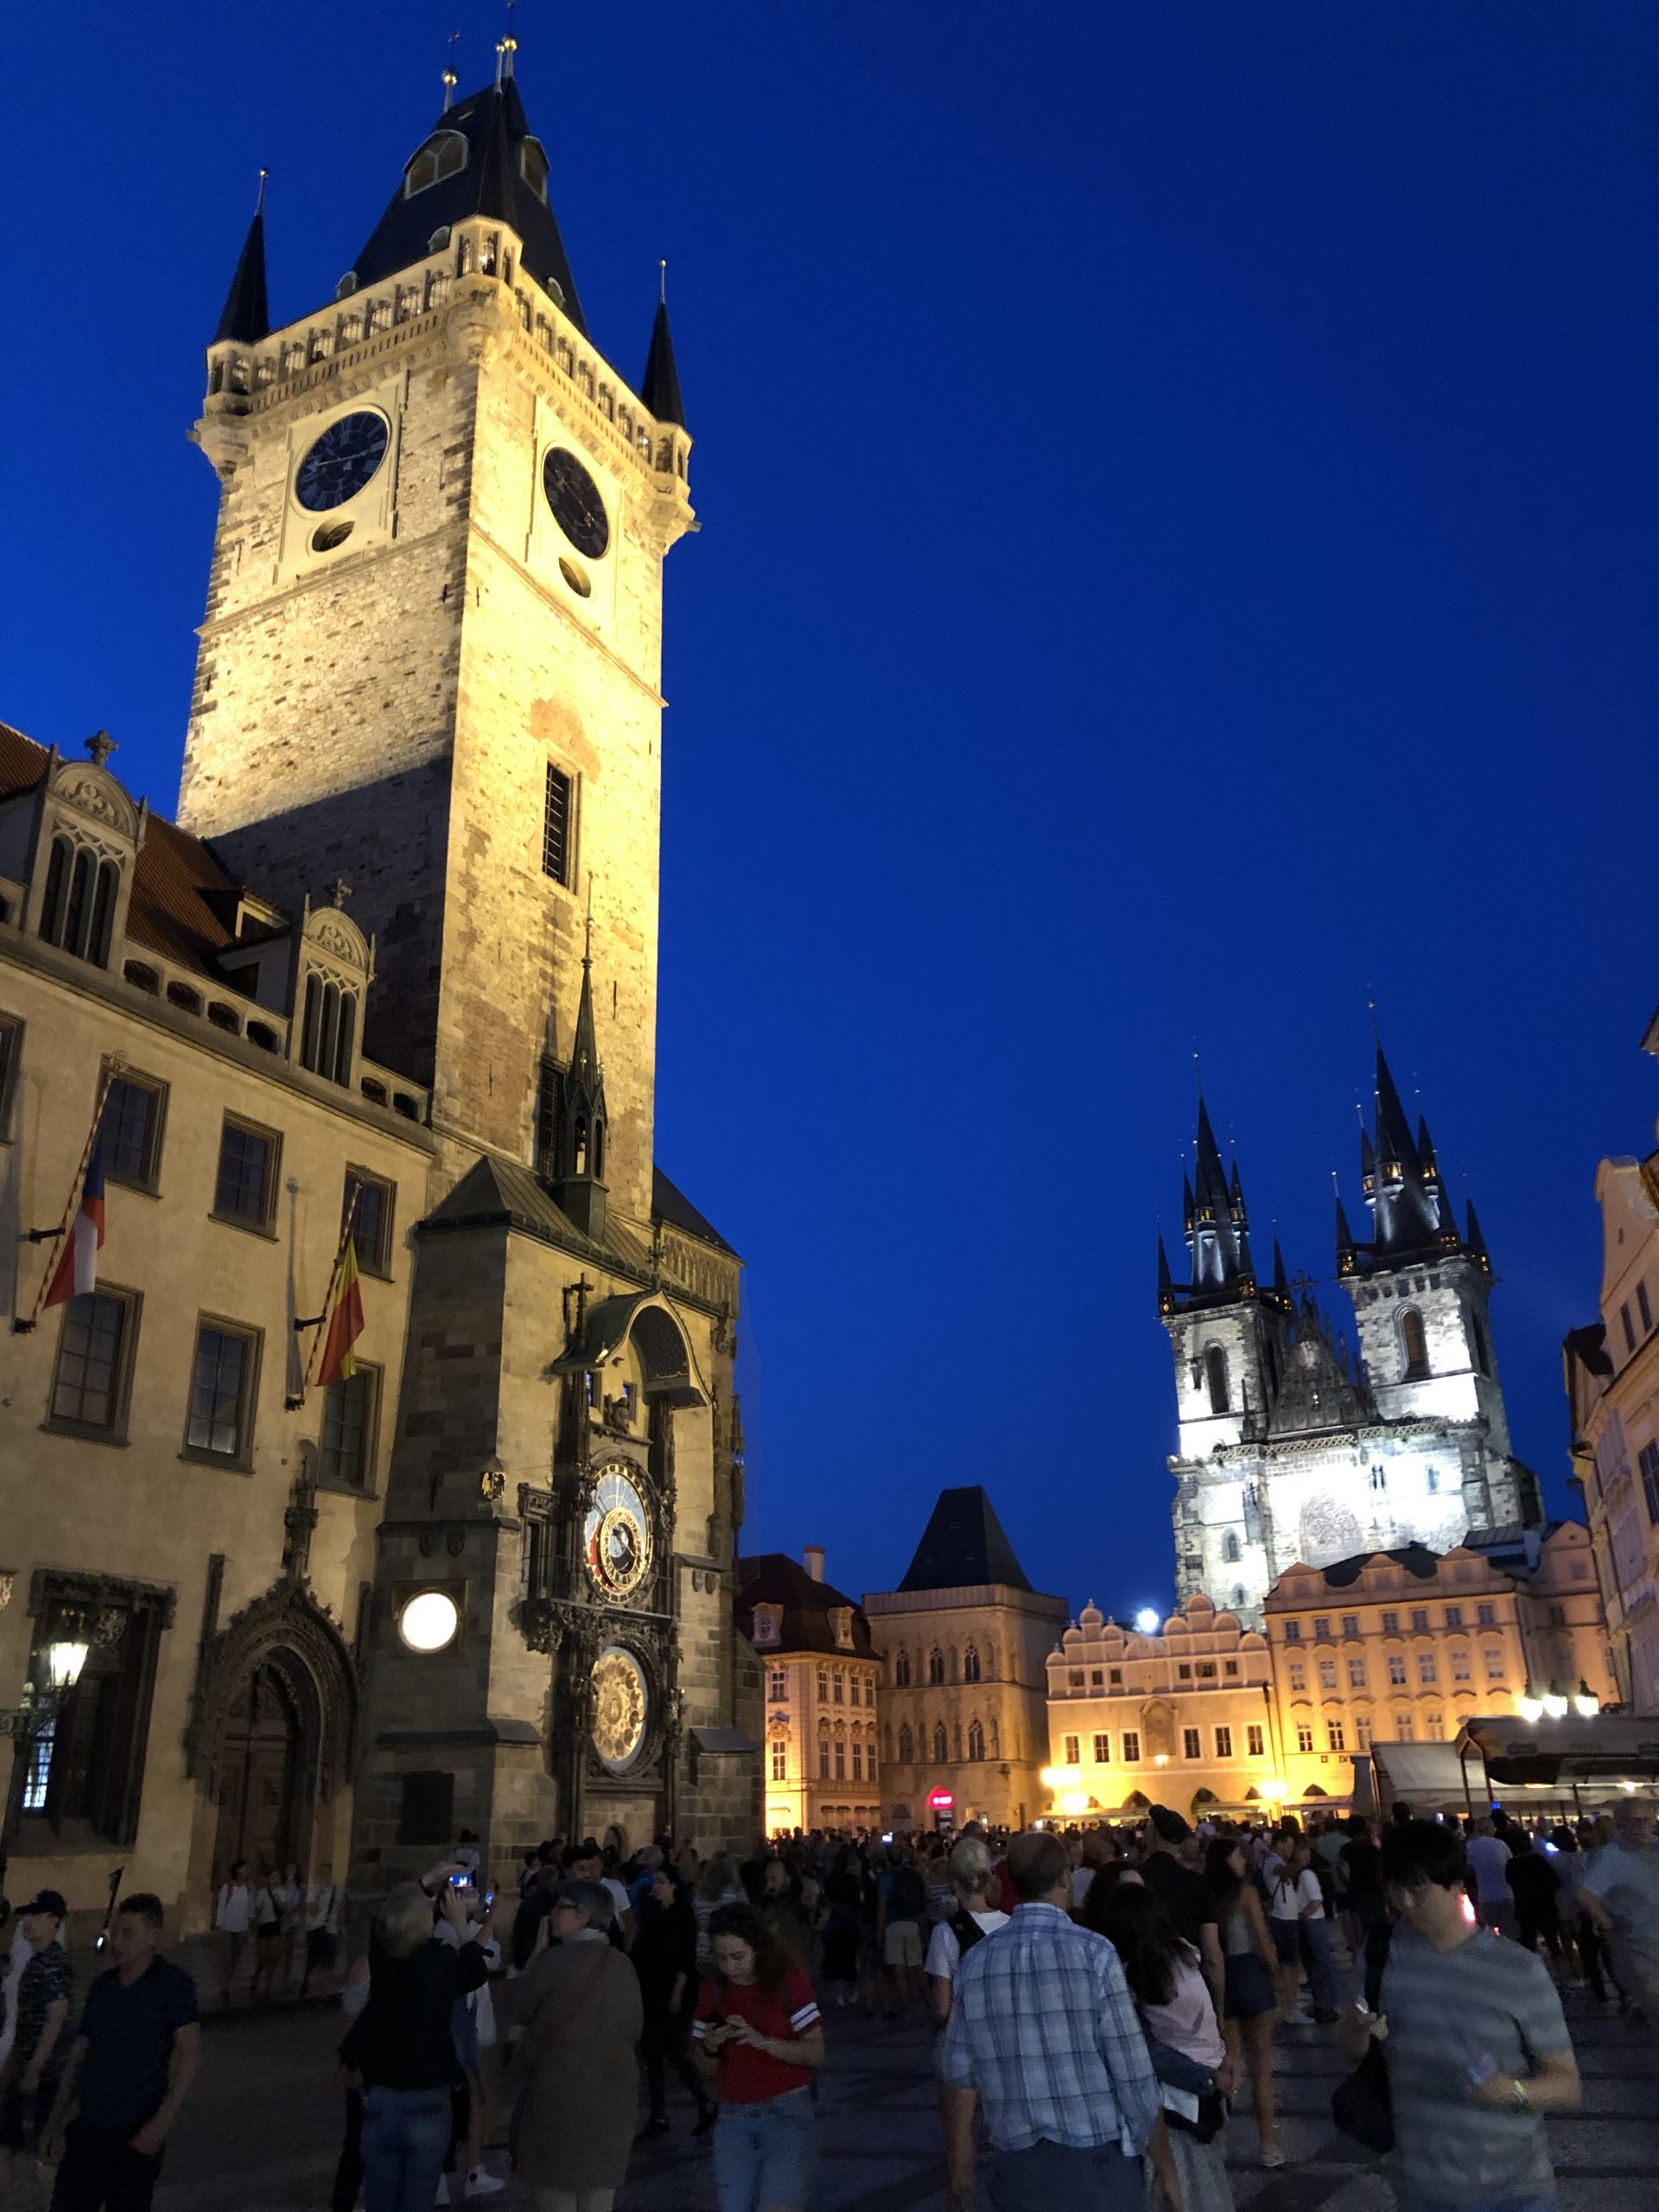 رحلتي الى النمسا و المانيا و التشيك و بولندا , واحدة من اجمل رحلاتي الاوروبية